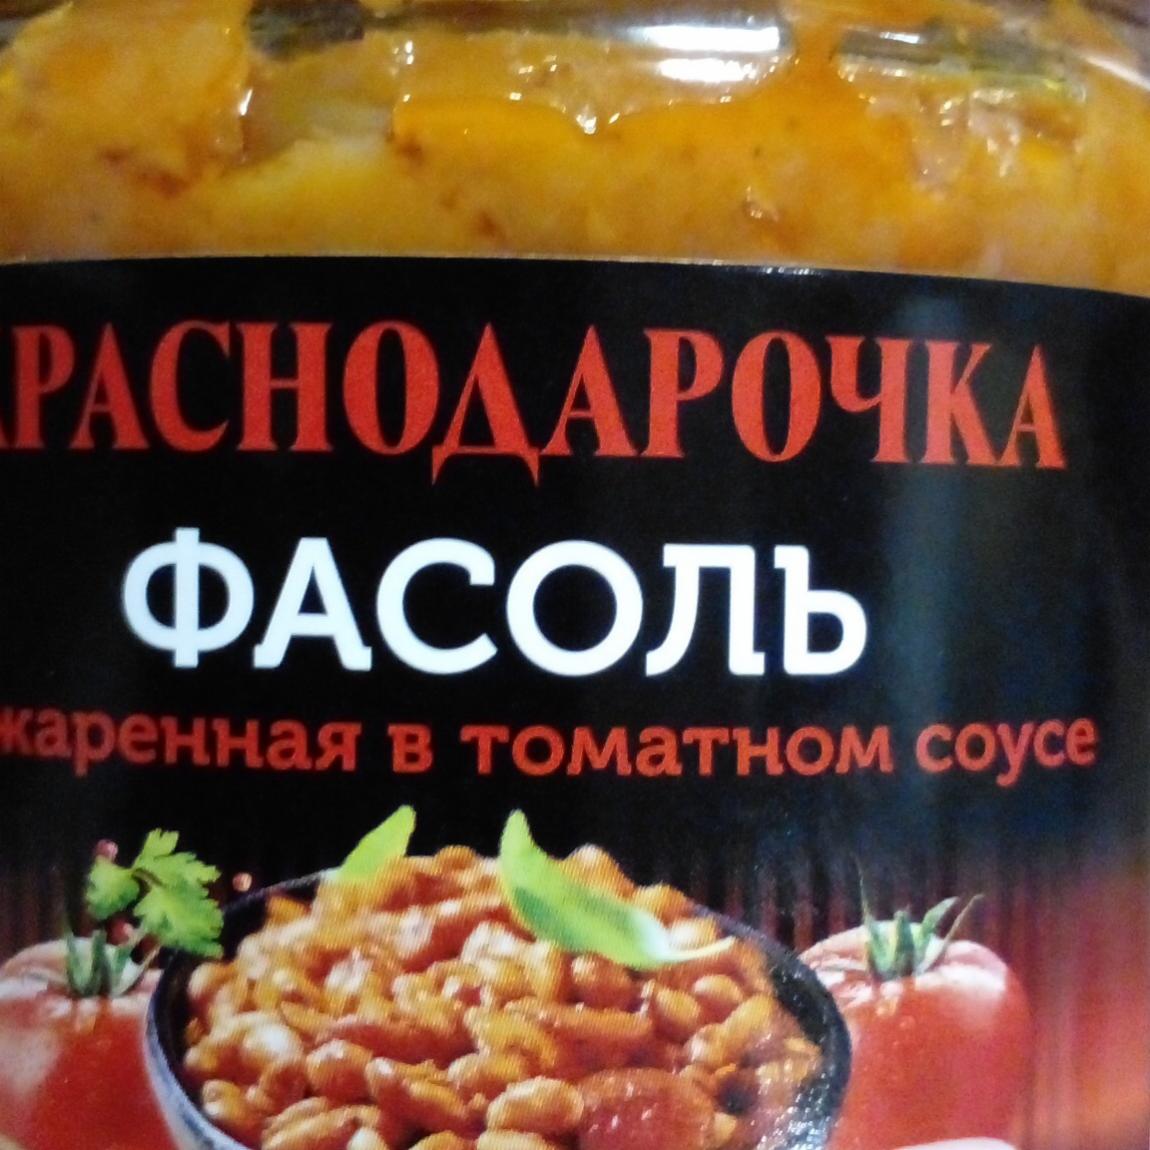 Фото - фасоль обжаренная в томатном соусе Краснодарочка